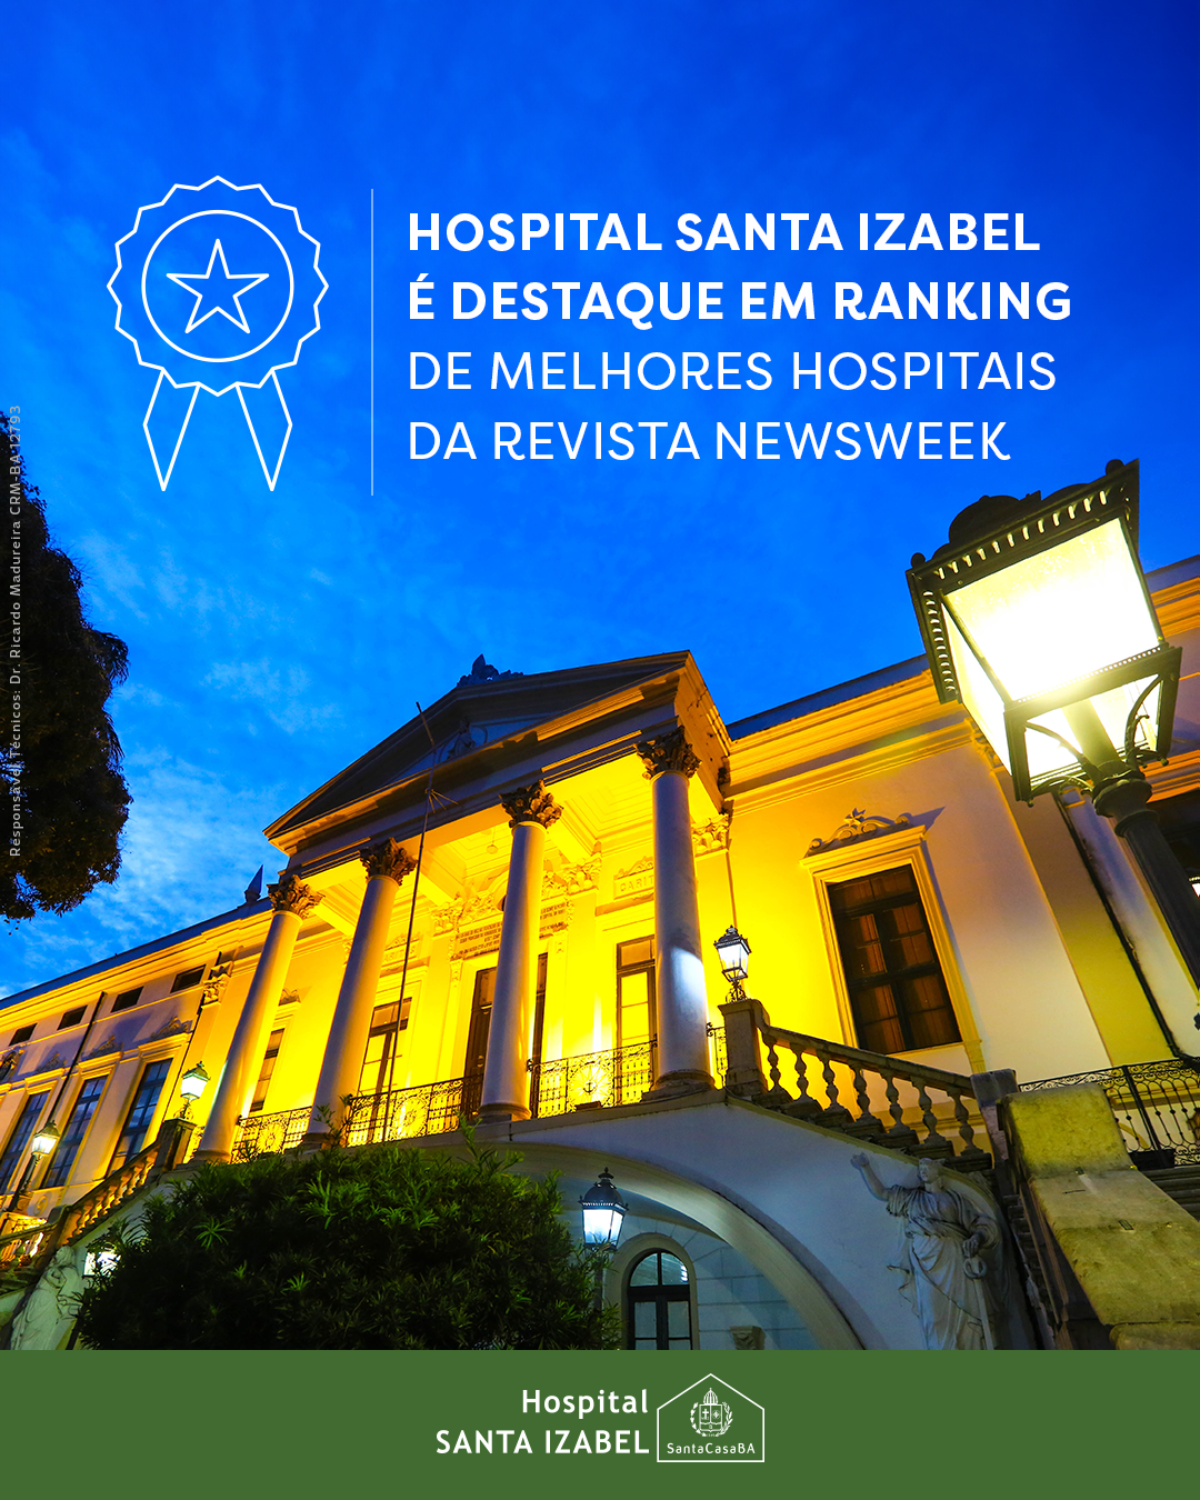 Hospital Santa Izabel é destaque em ranking de melhores hospitais da revista Newsweek